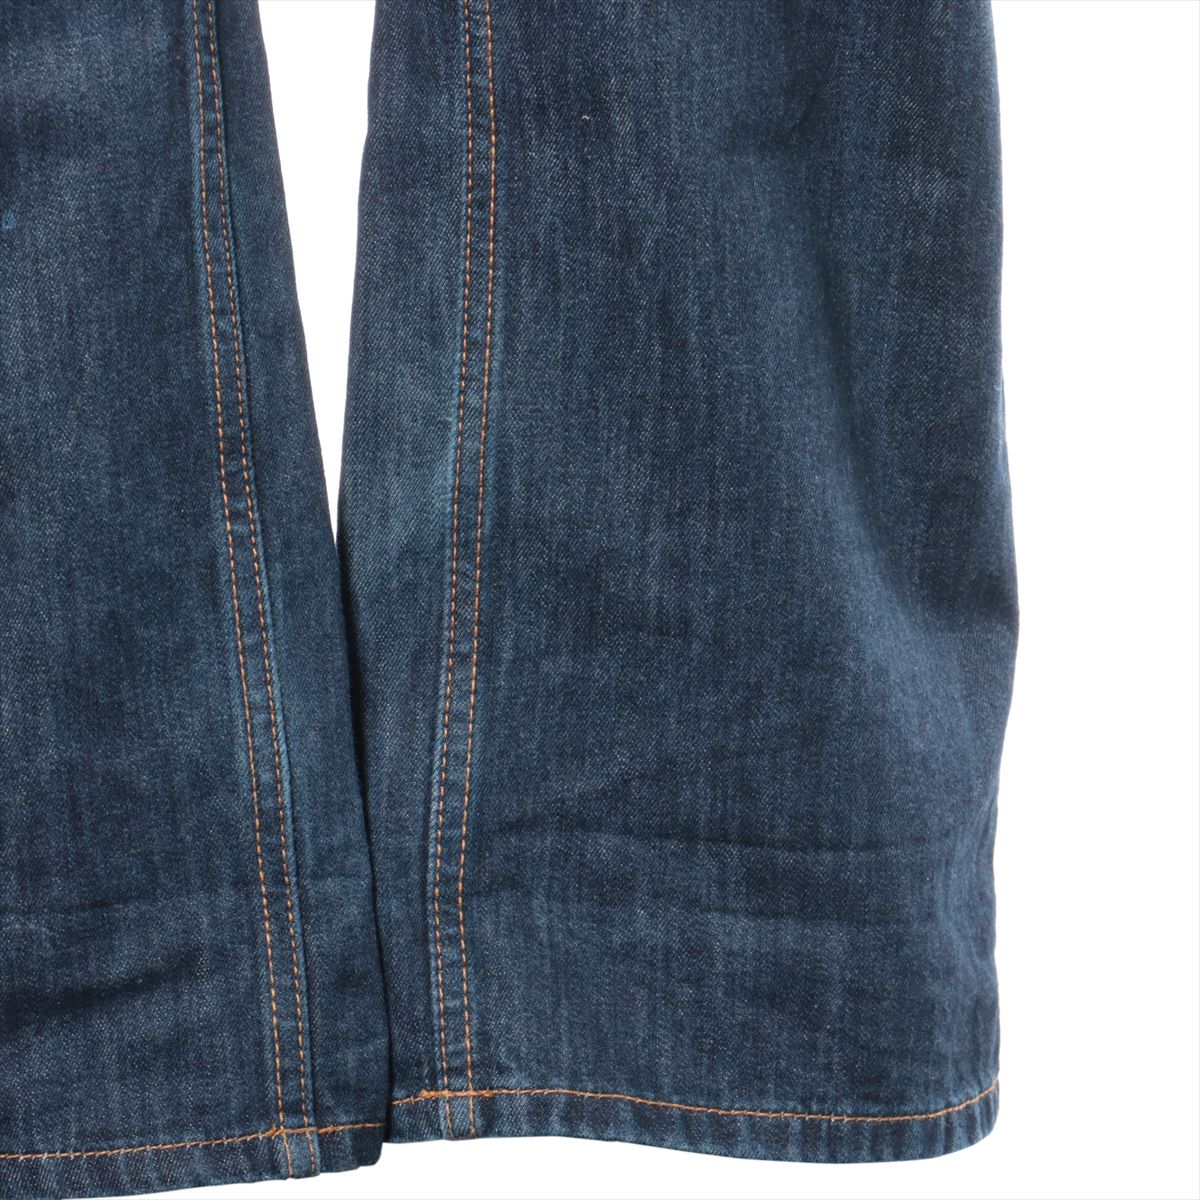 Gucci Cotton Denim pants 52 Men's Navy blue